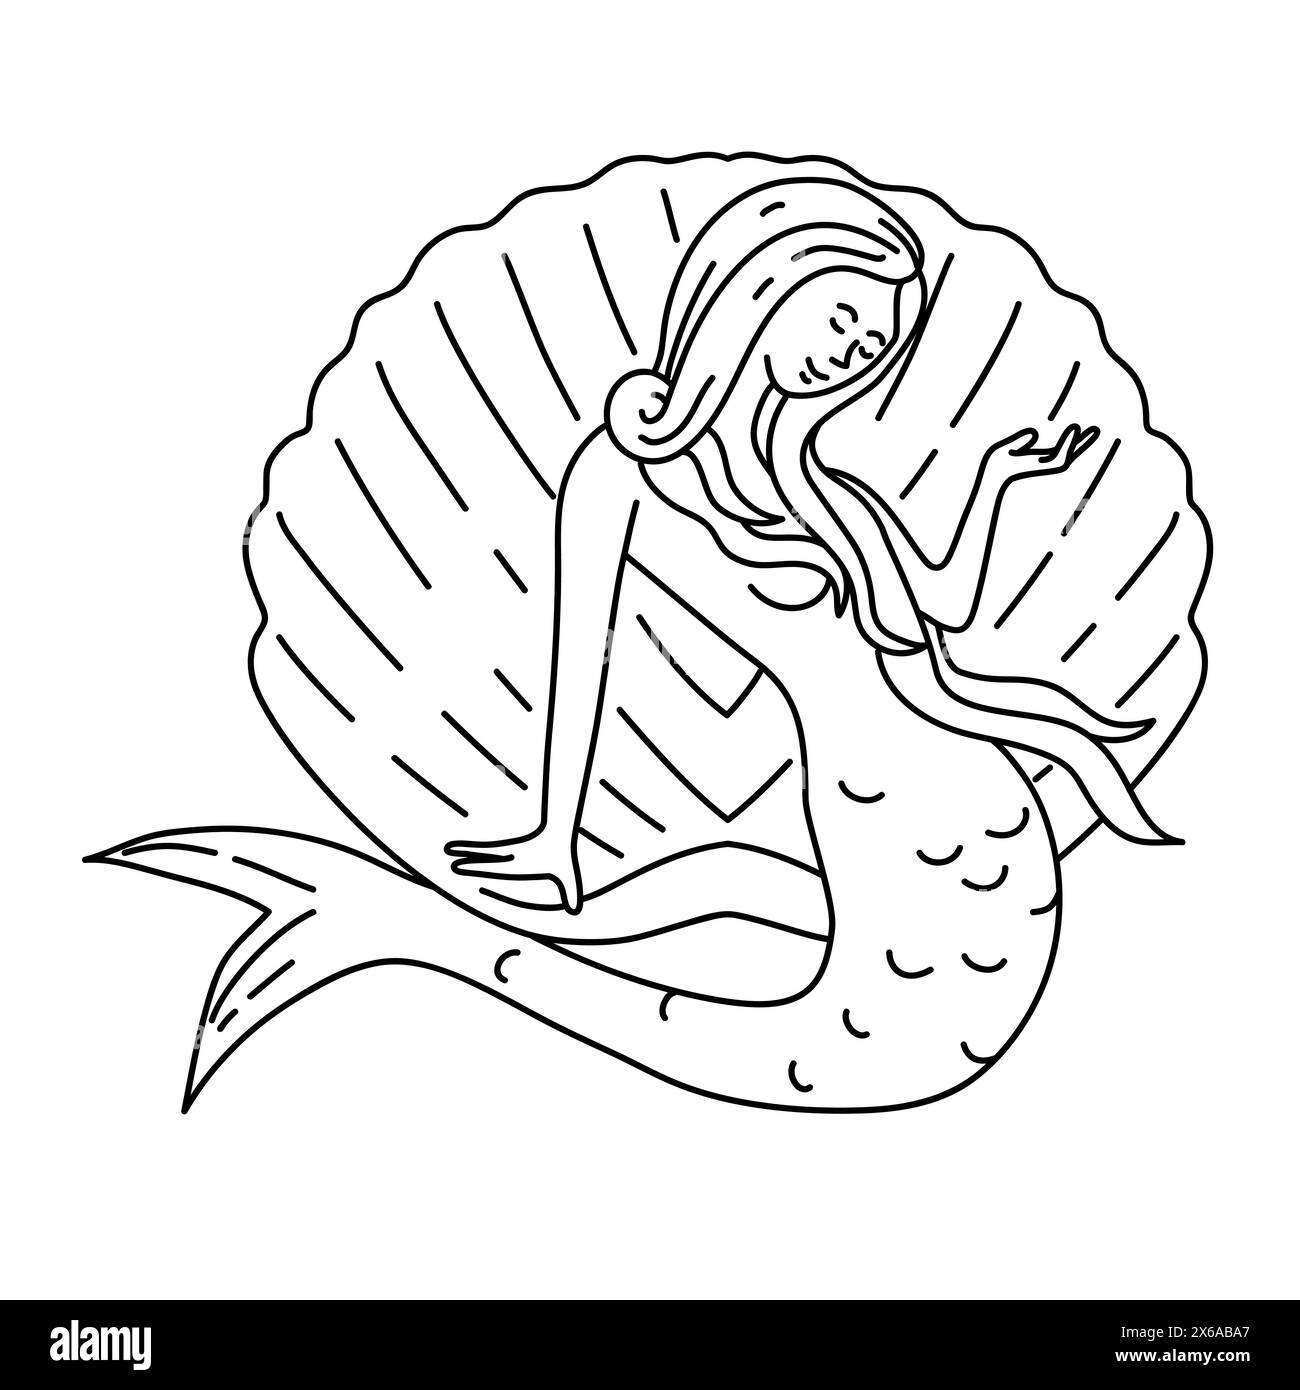 Illustrazione monofila di una sirena o sirena con lunghi capelli che scorrono seduti su una conchiglia di vongole vista dalla parte anteriore, realizzata in stile art-line monolina. Illustrazione Vettoriale